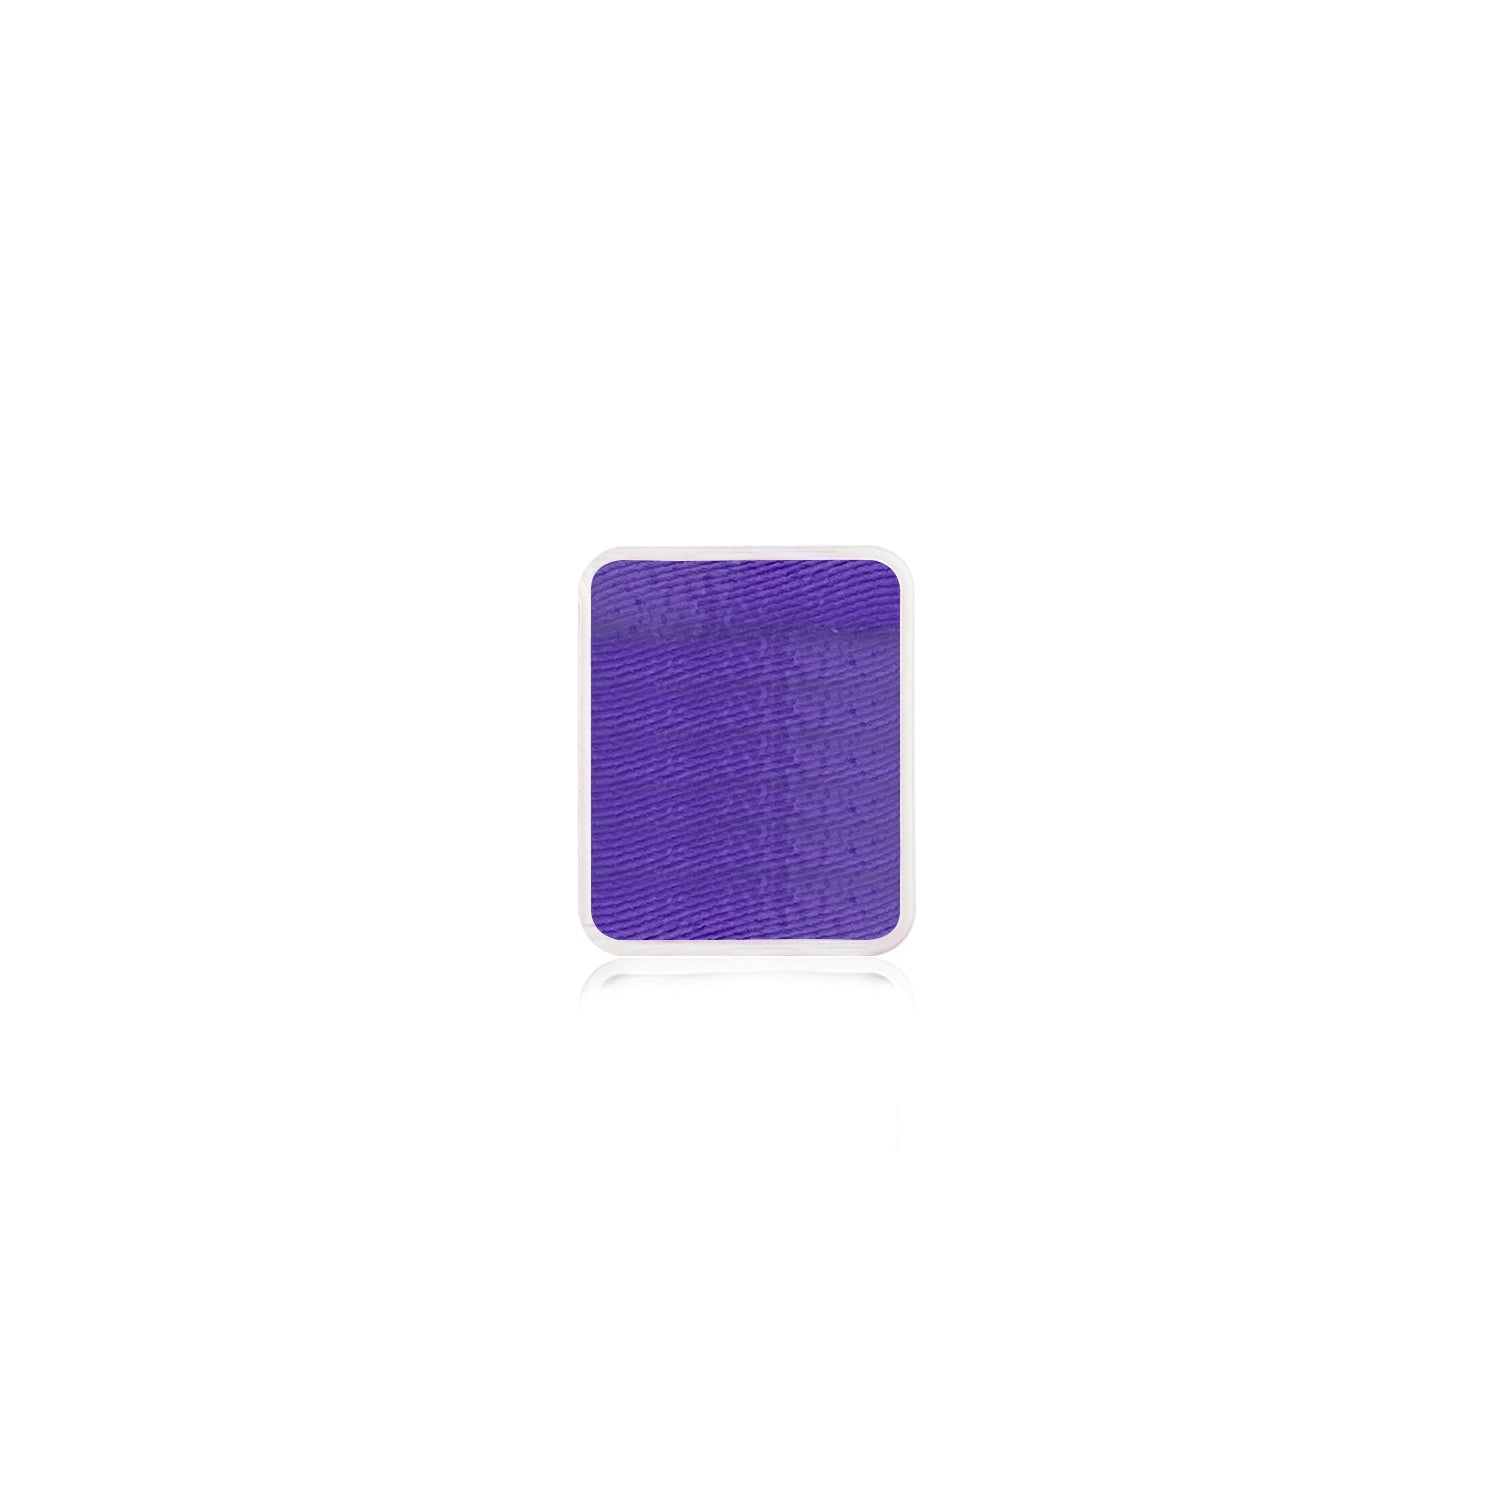 Kraze FX Face Paint Palette Refill - Neon Purple (0.21 oz/6 gm)